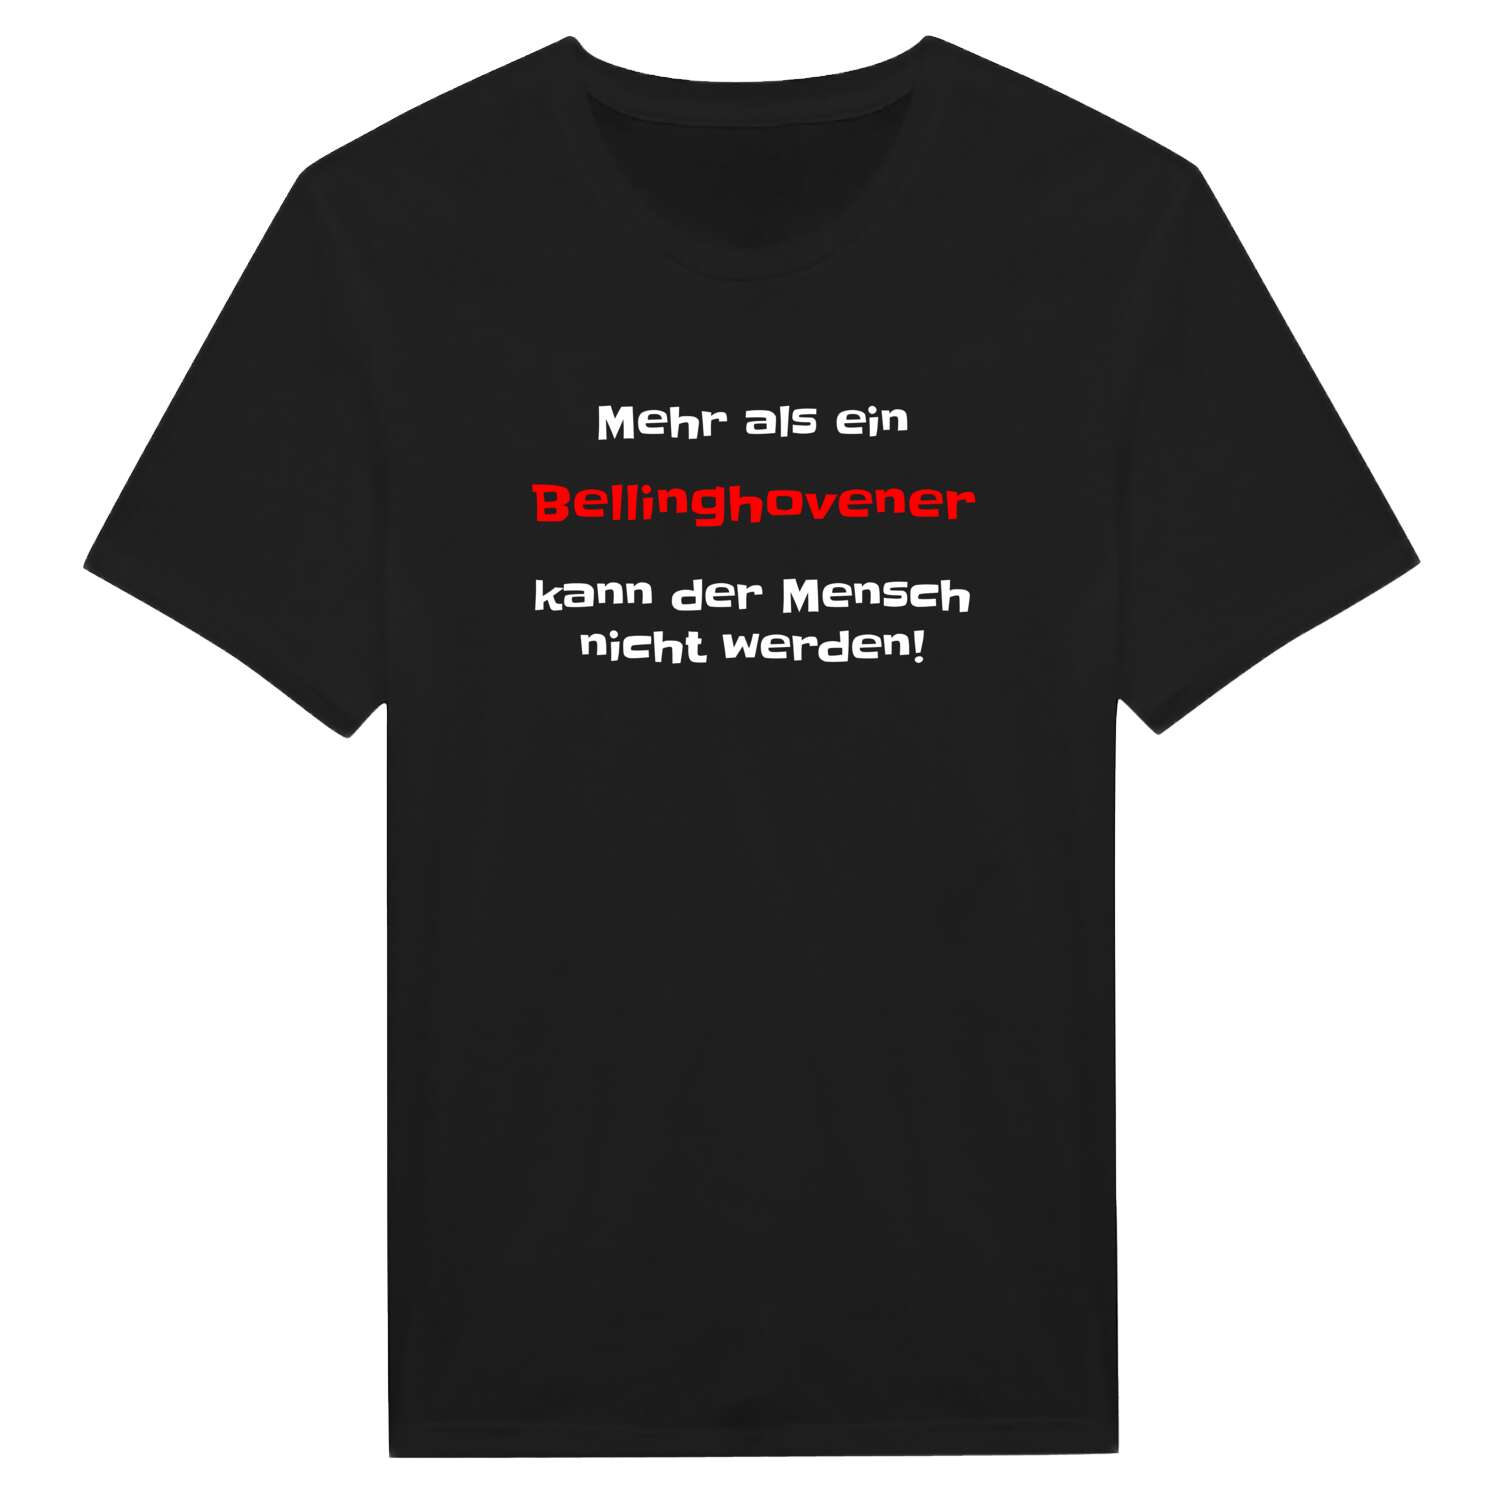 Bellinghoven T-Shirt »Mehr als ein«